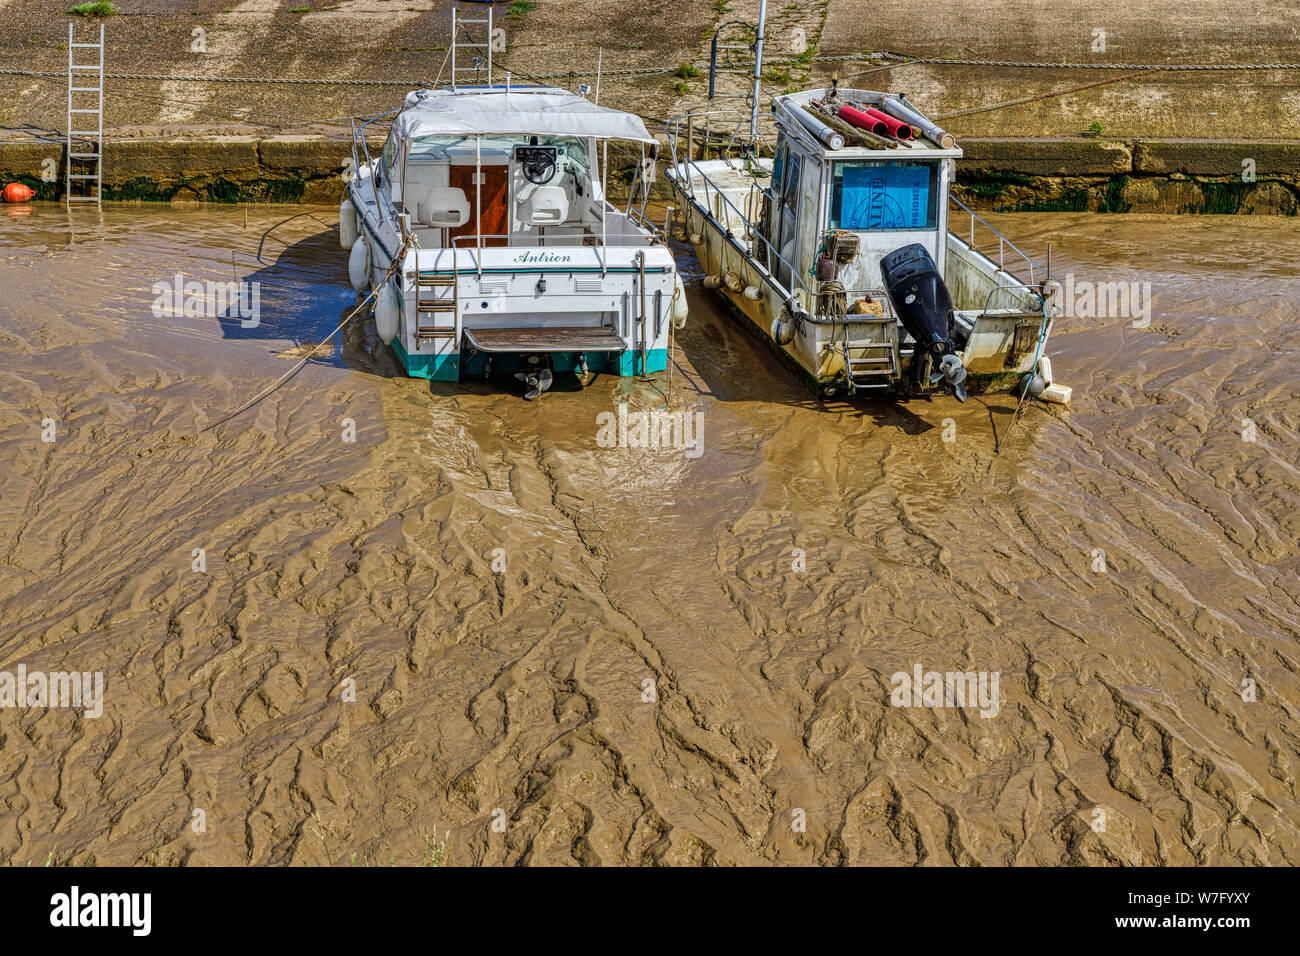 Deux petits bateaux se sont installés sur les terrains boueux de l'estuaire de la Saugeron à marée basse dans la région de Blaye, près de Bordeaux, dans le département du Nord de la France. Banque D'Images